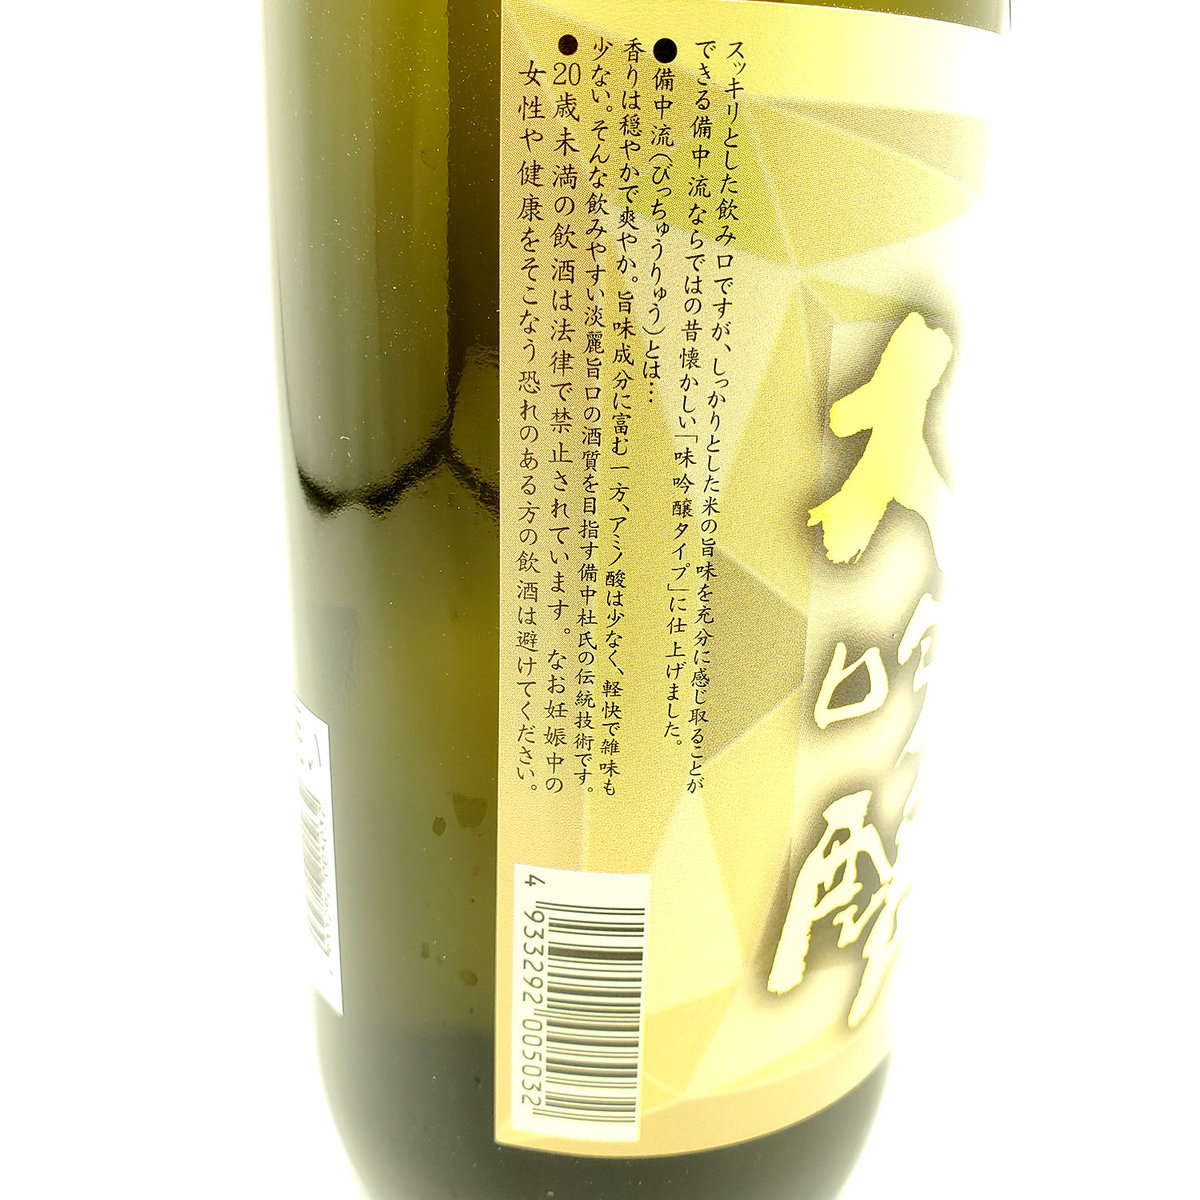 嘉美心| 日本清酒嘉美心純米大吟醸備中流日本製(720ml) | HKTVmall 香港最大網購平台